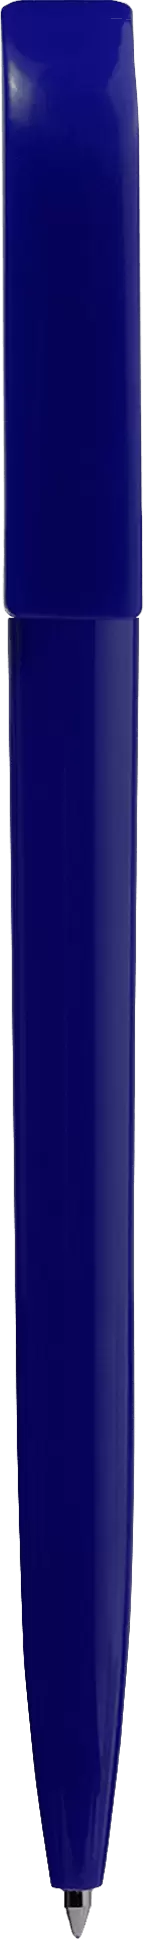 Ручка GLOBAL Темно-синяя 1080-14